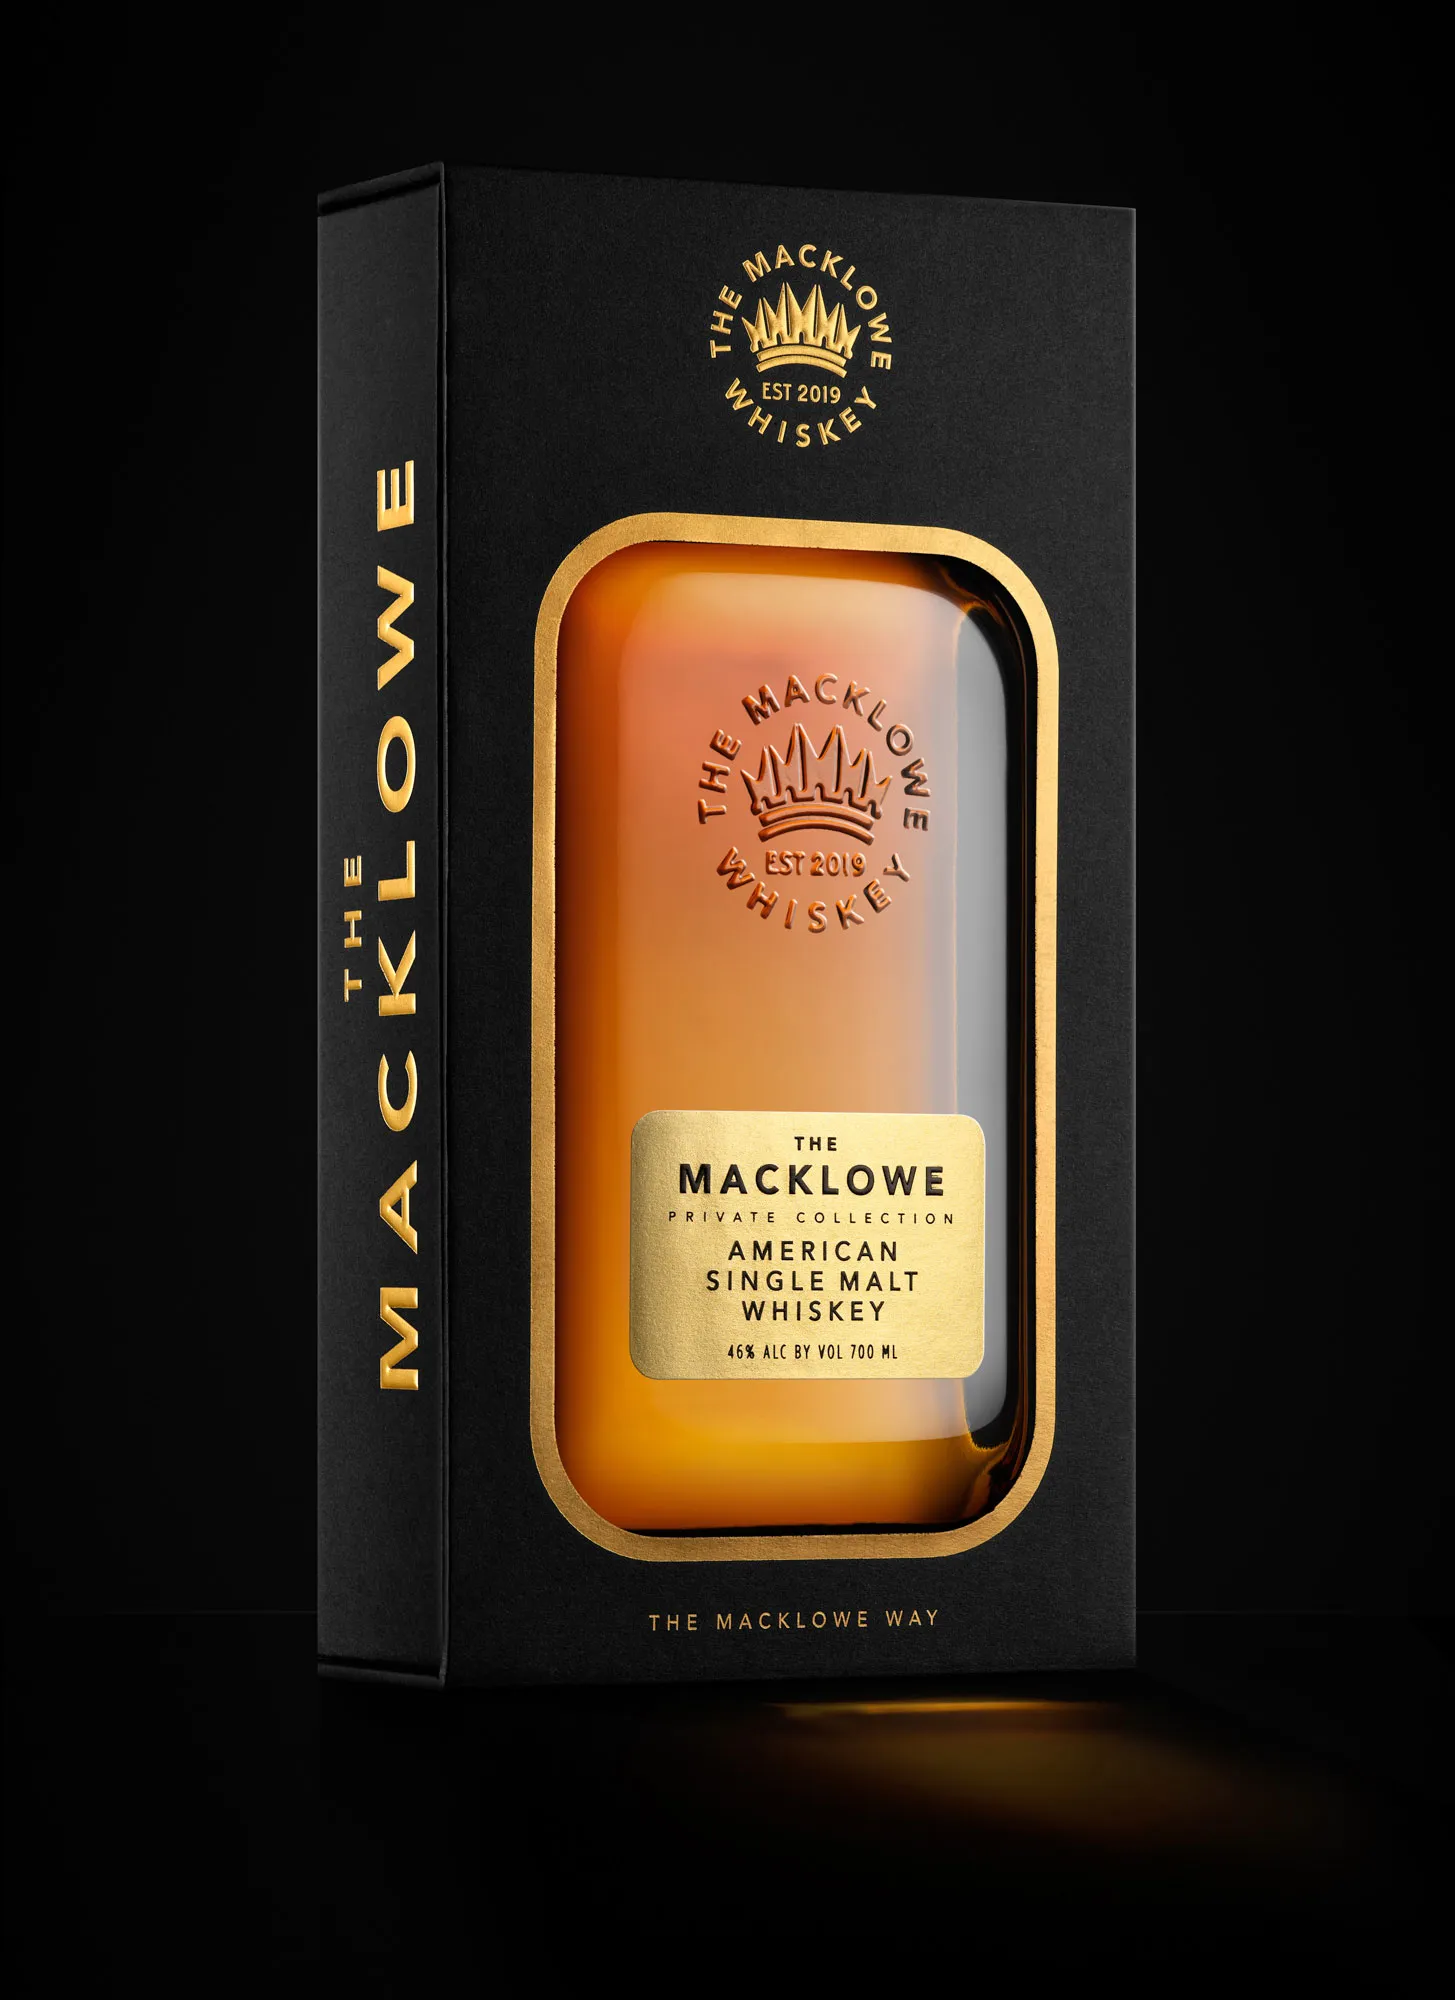 Macklowe whisky